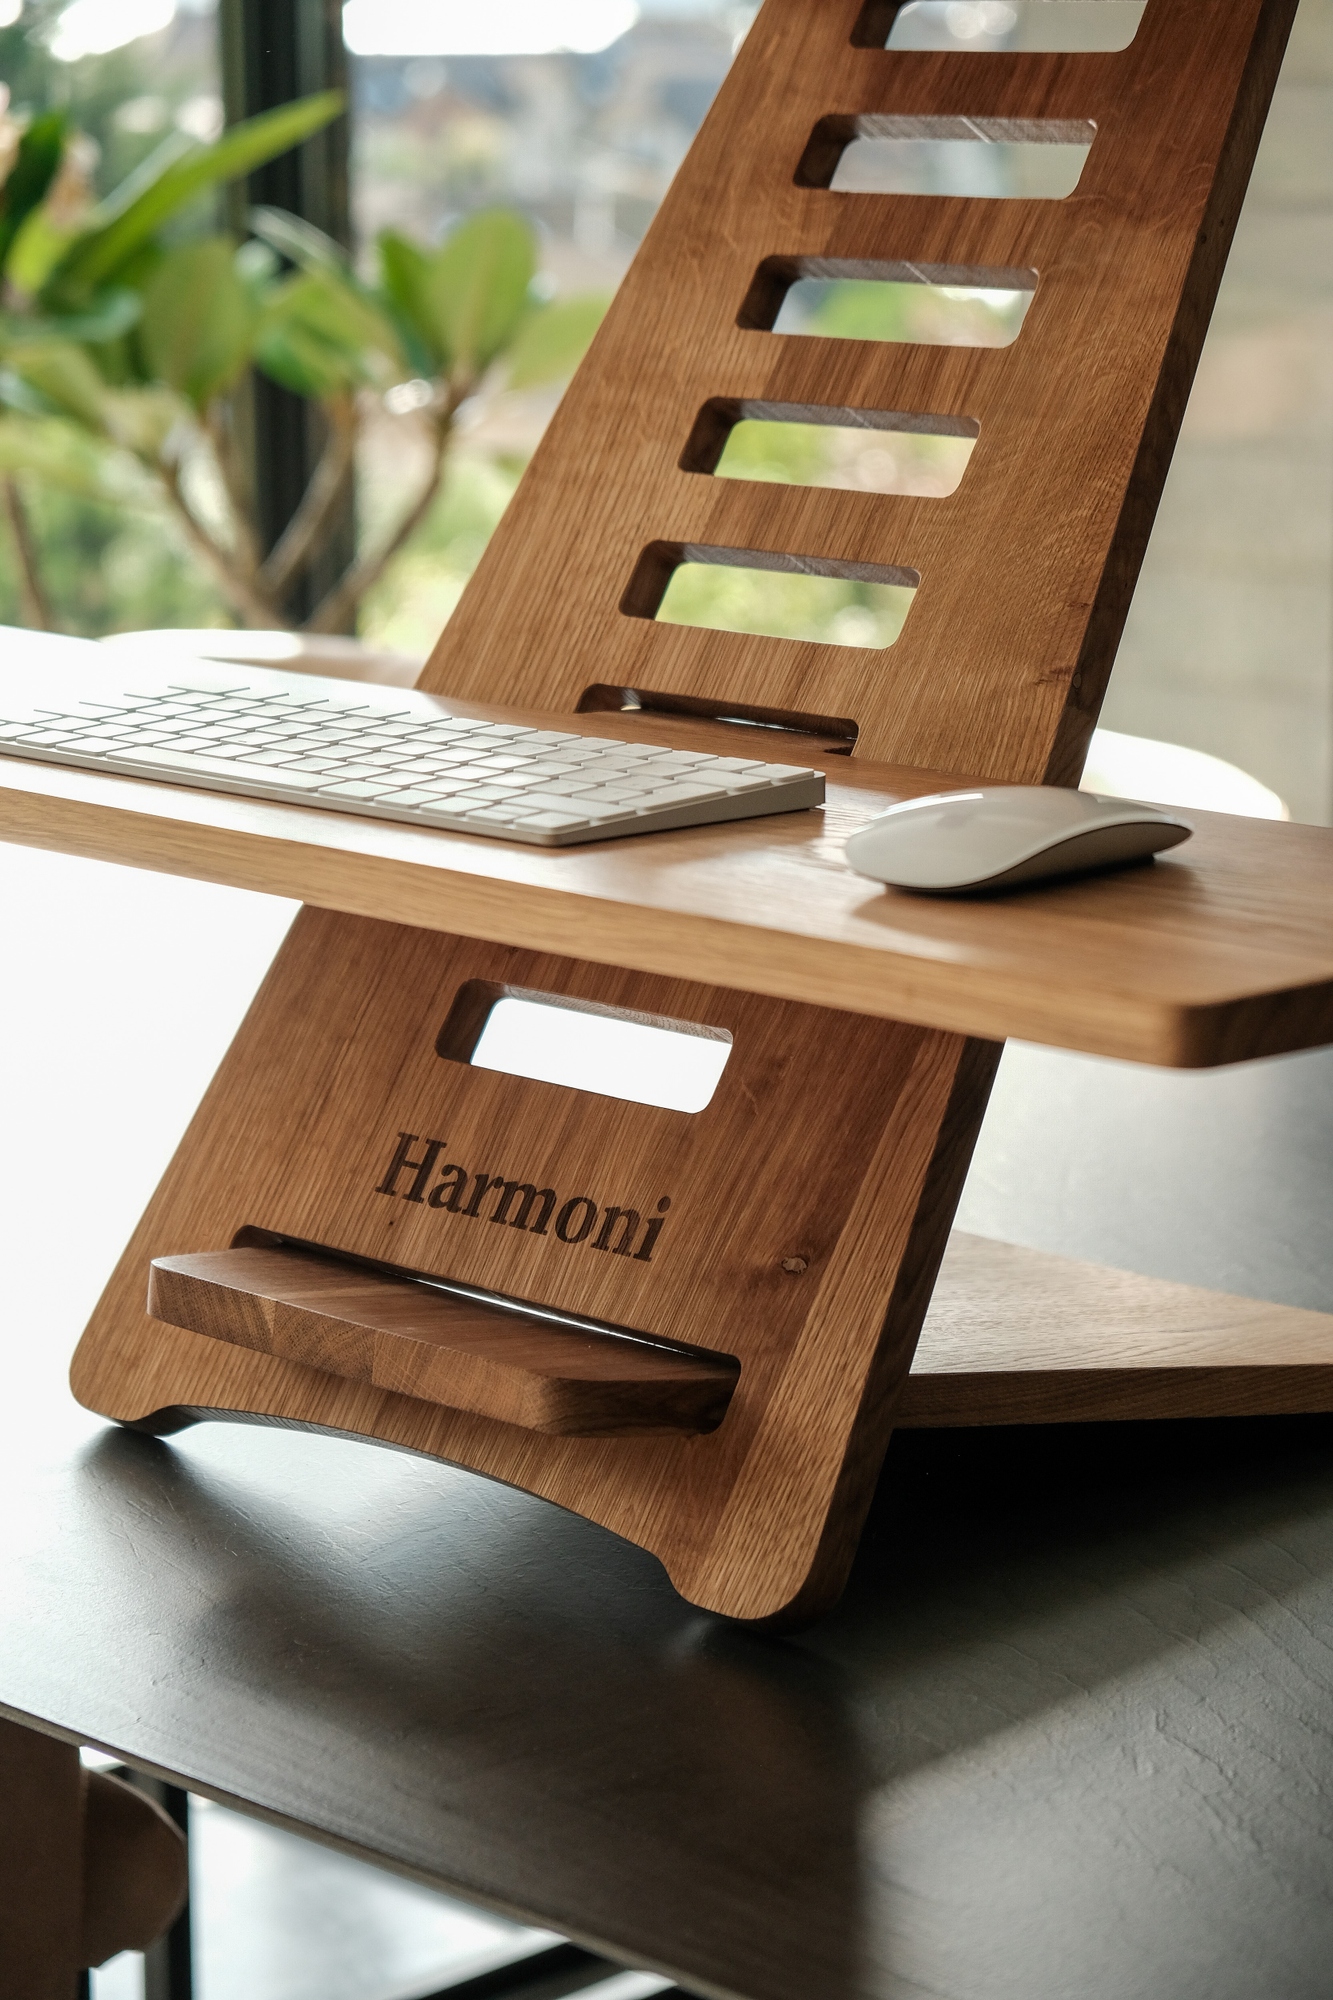 Harmoni Desk wooden standing desk attachment